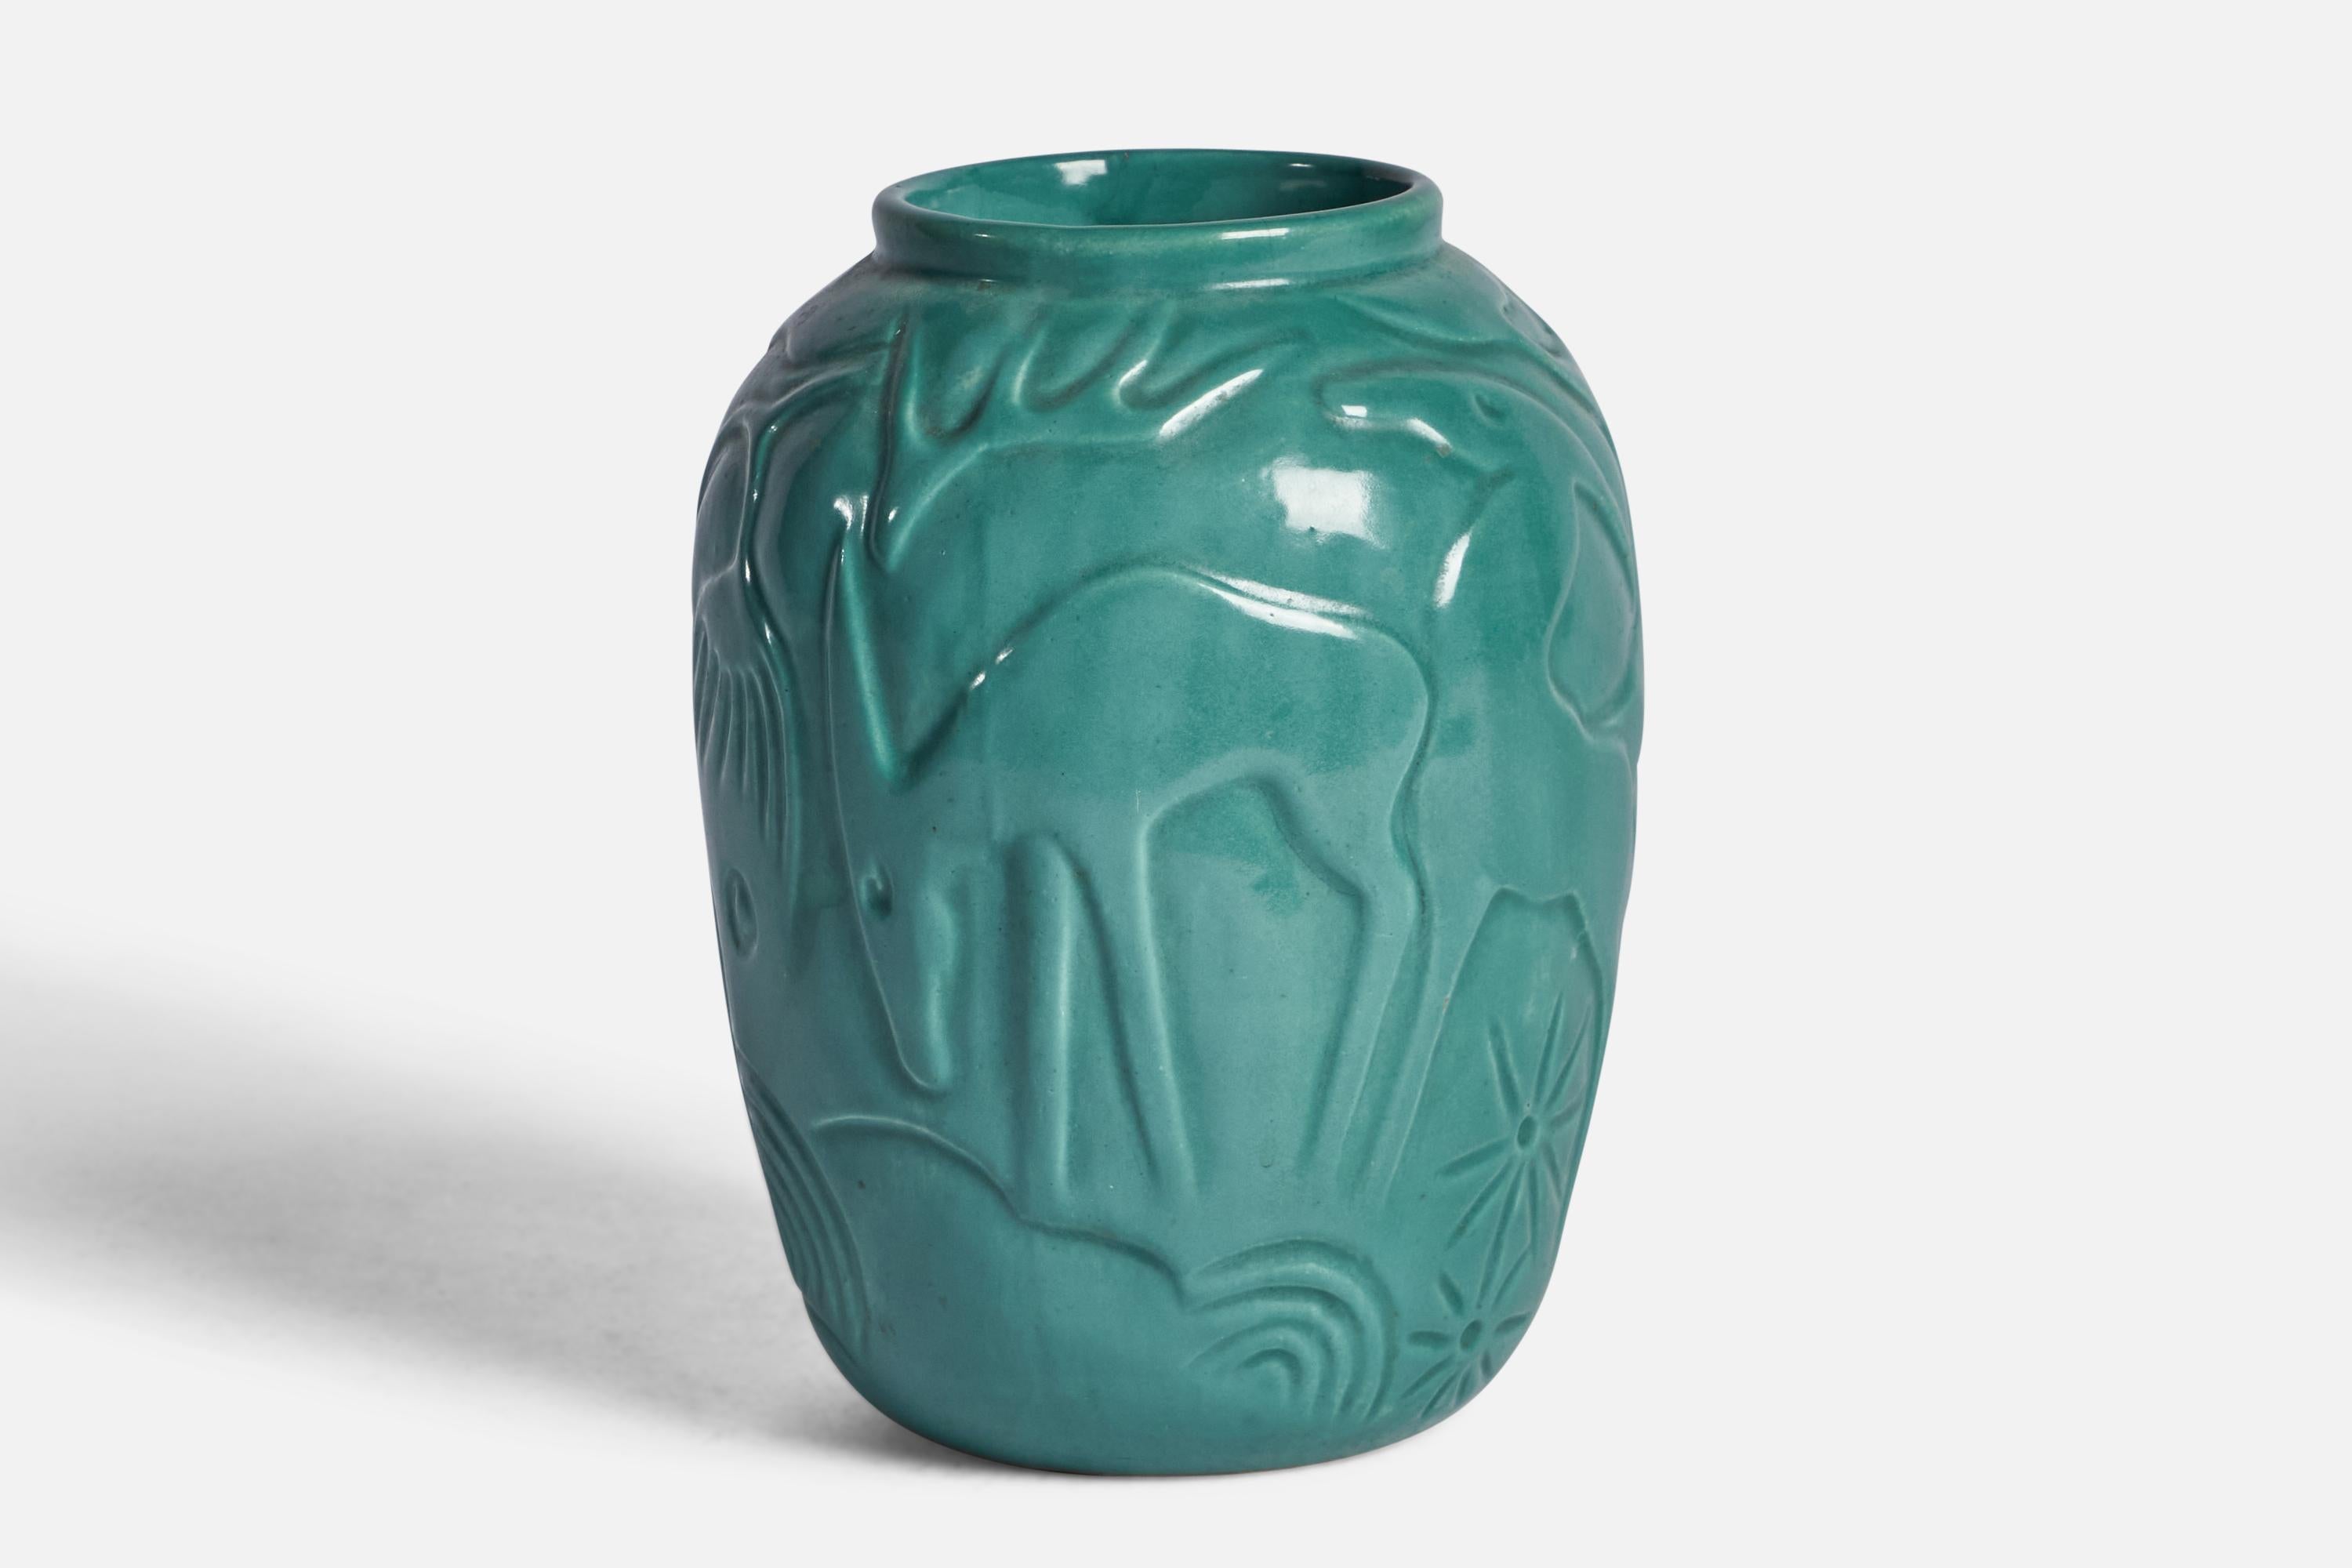 Grün glasierte Keramikvase, entworfen und hergestellt von Syco Keramik, Schweden, ca. 1930er Jahre.